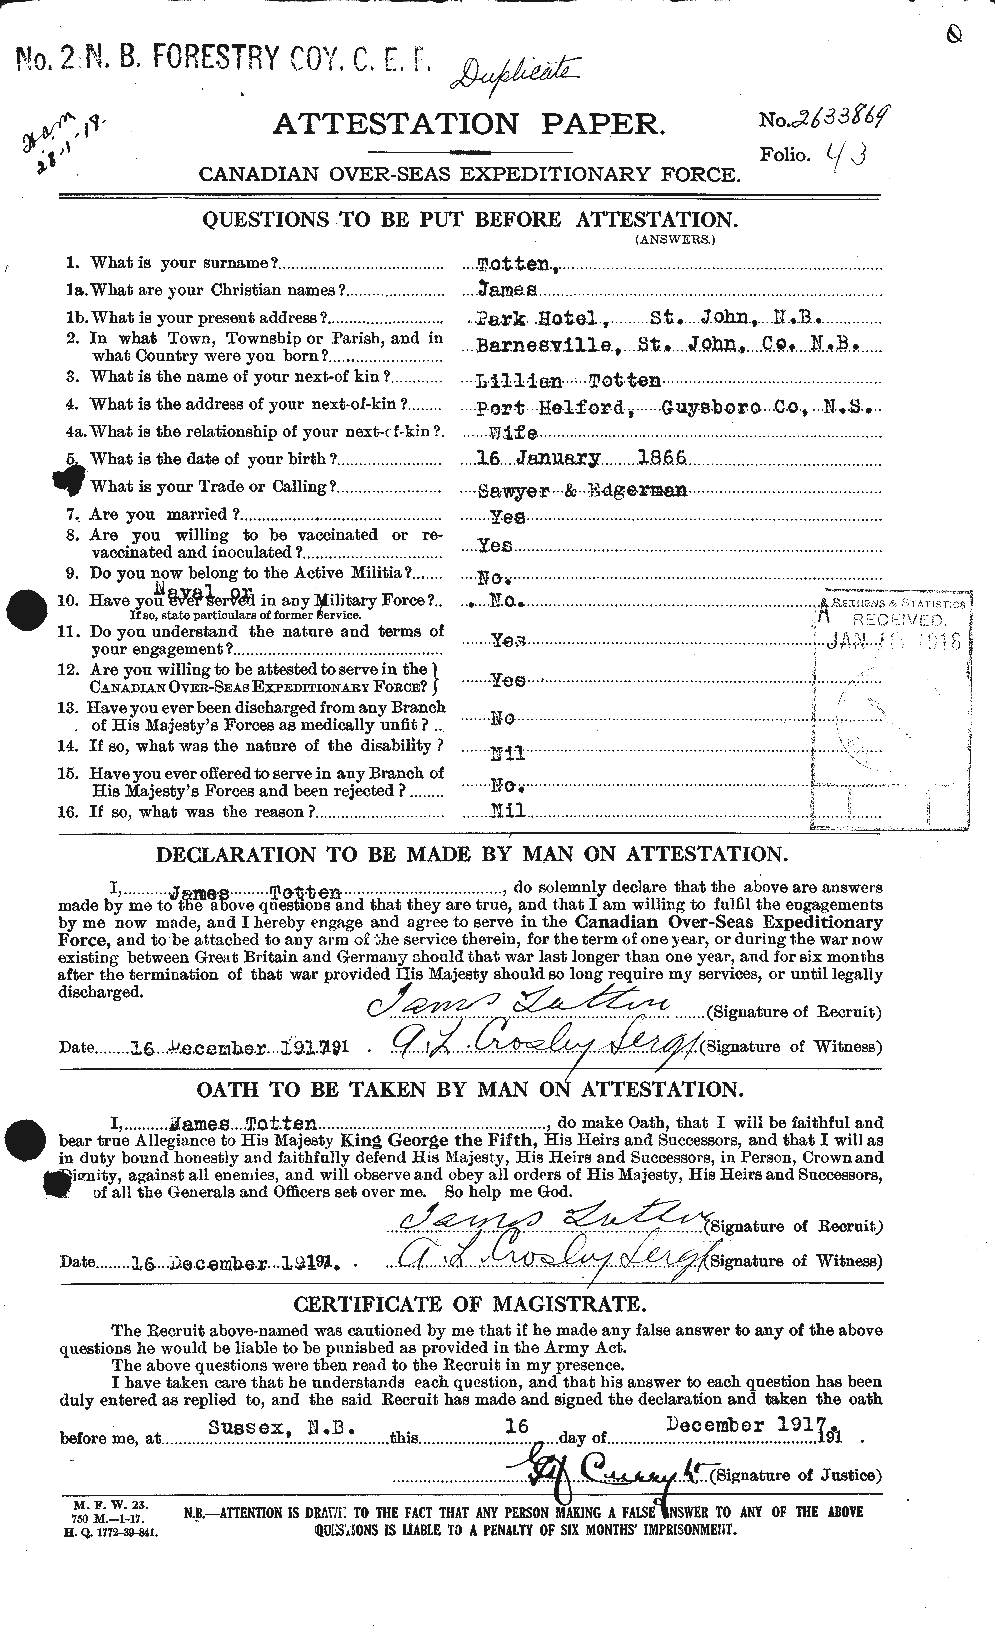 Dossiers du Personnel de la Première Guerre mondiale - CEC 650072a